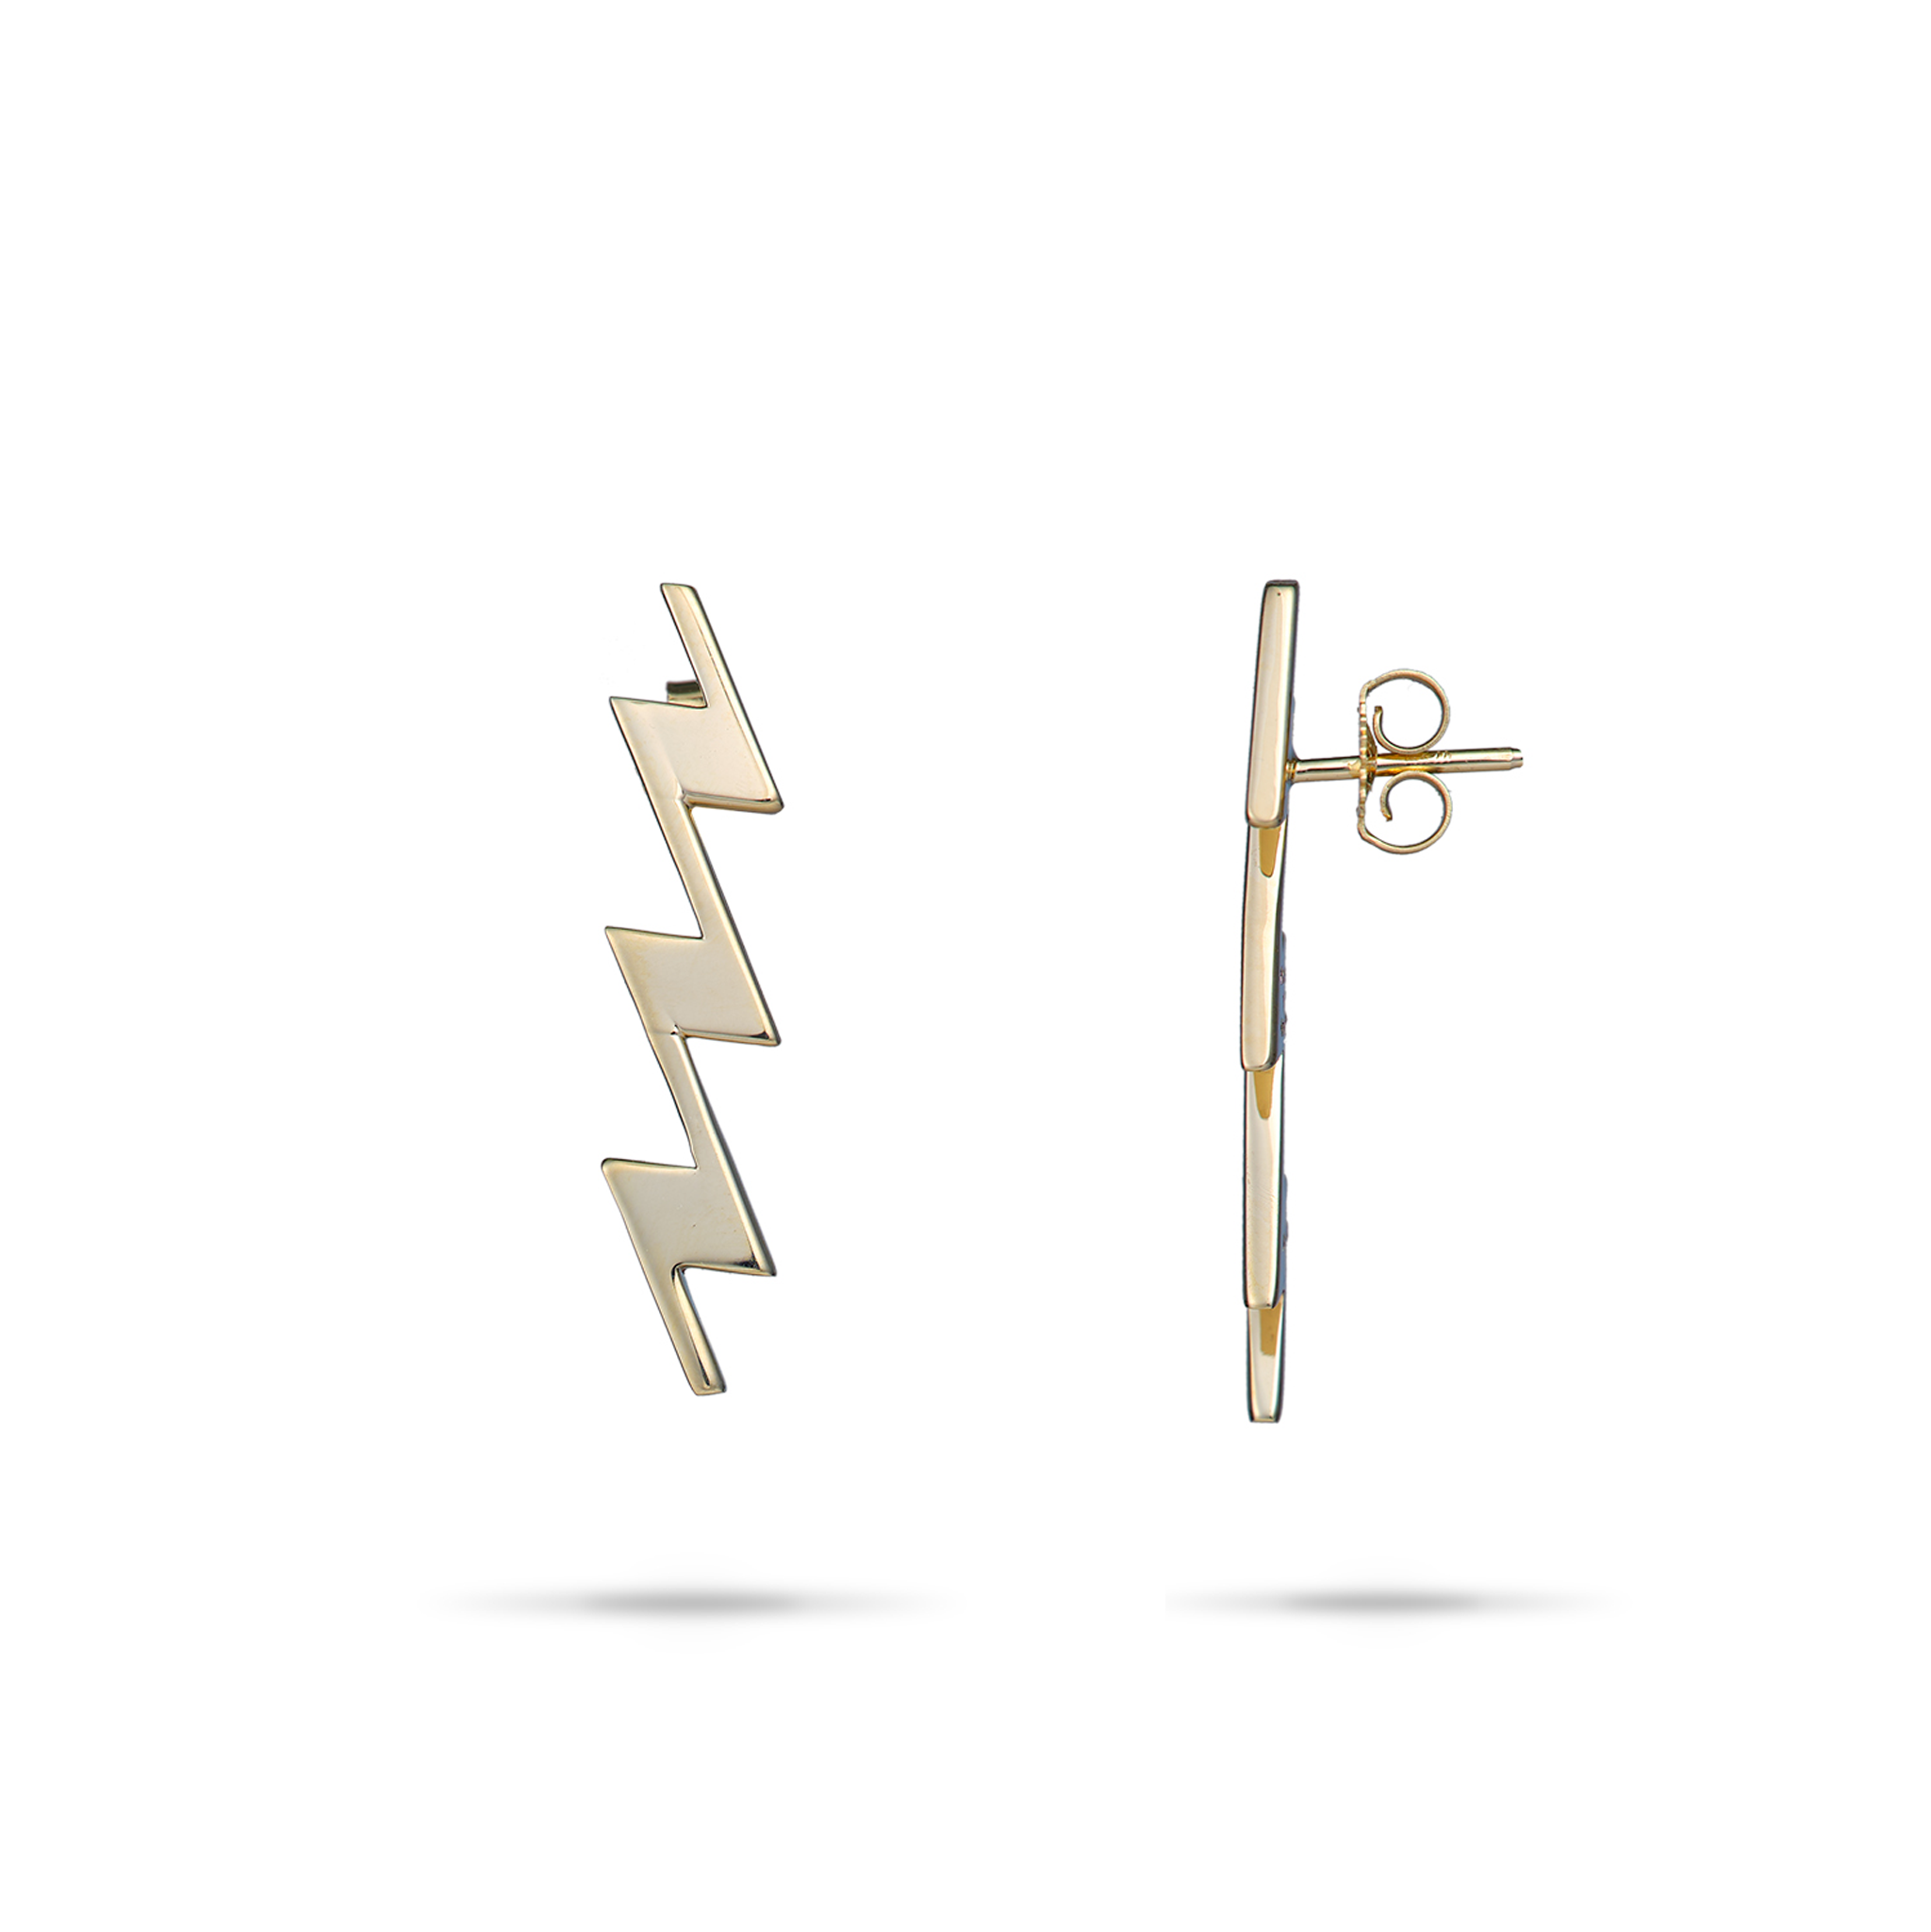 Kamohoaliʻi Lightning Bolt Earrings in Gold - 27.5mm